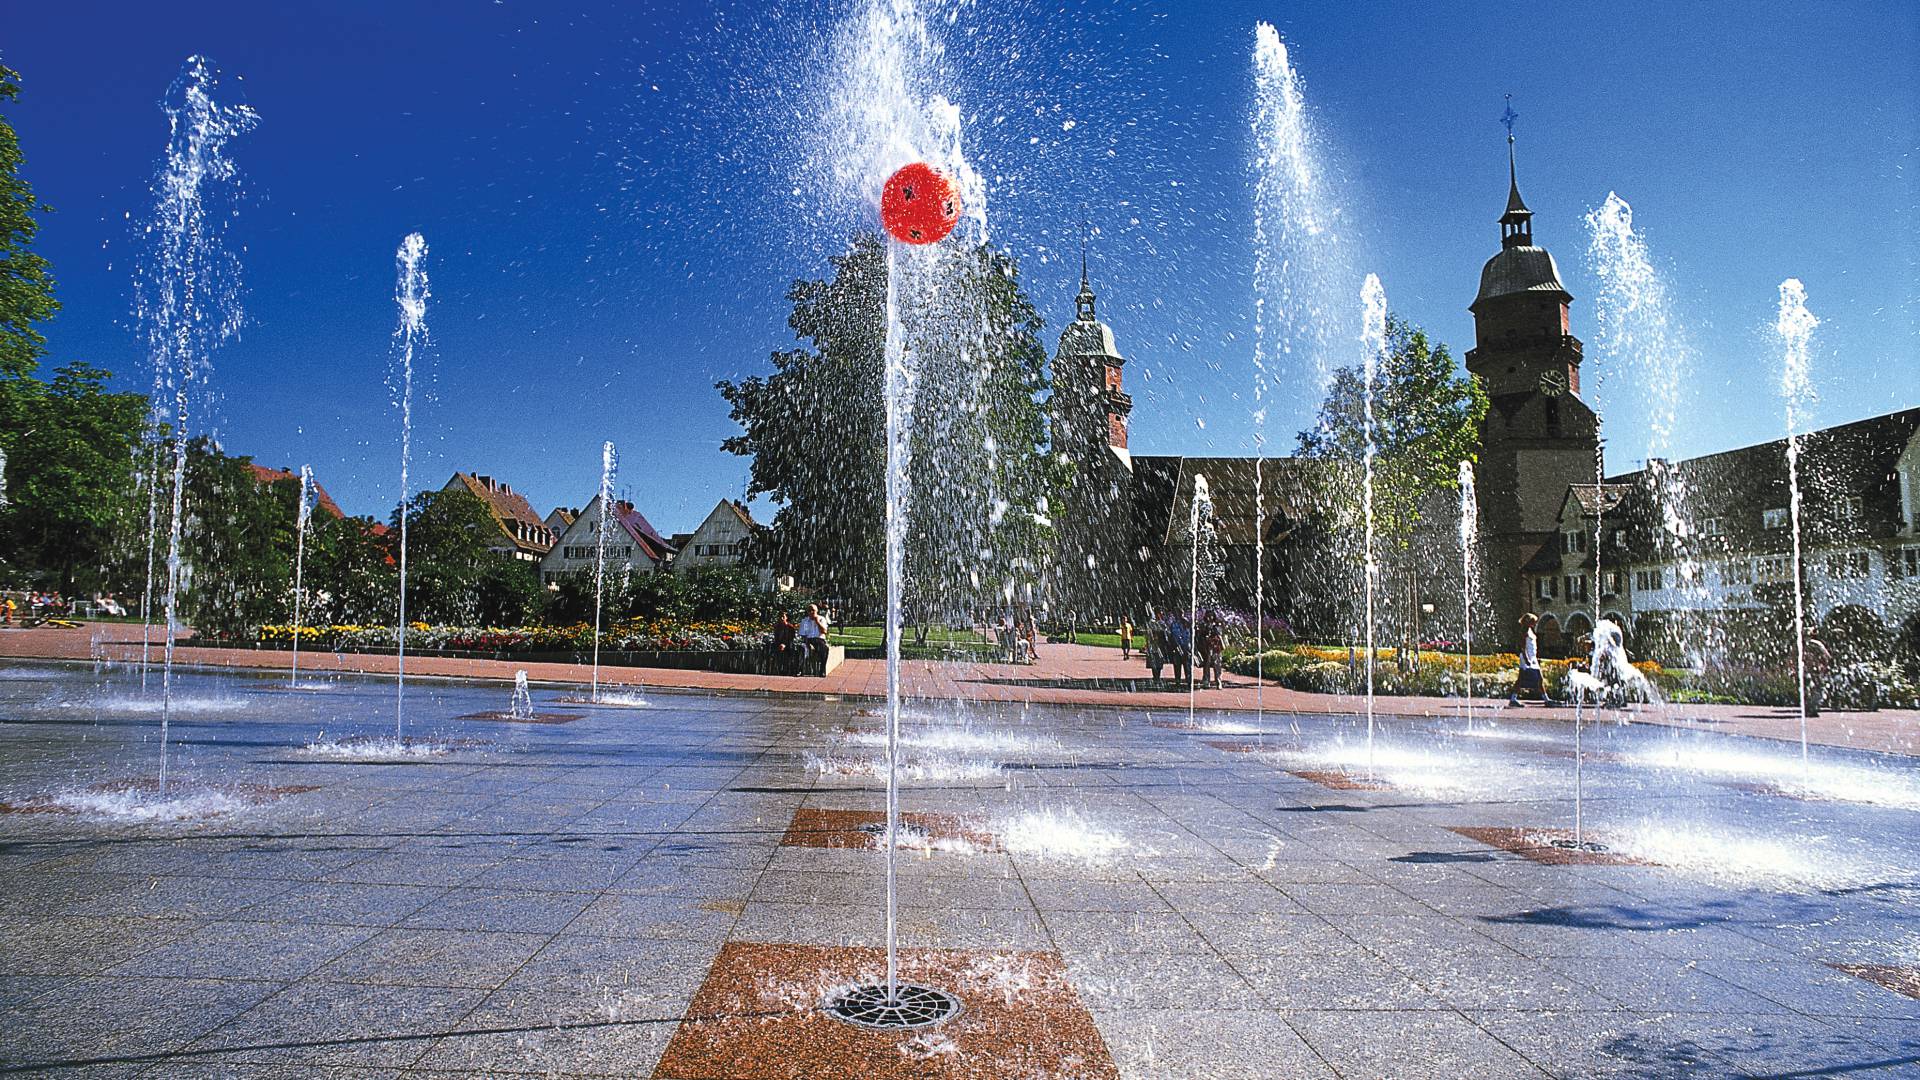 Wasserfontänen mit rotem Ball